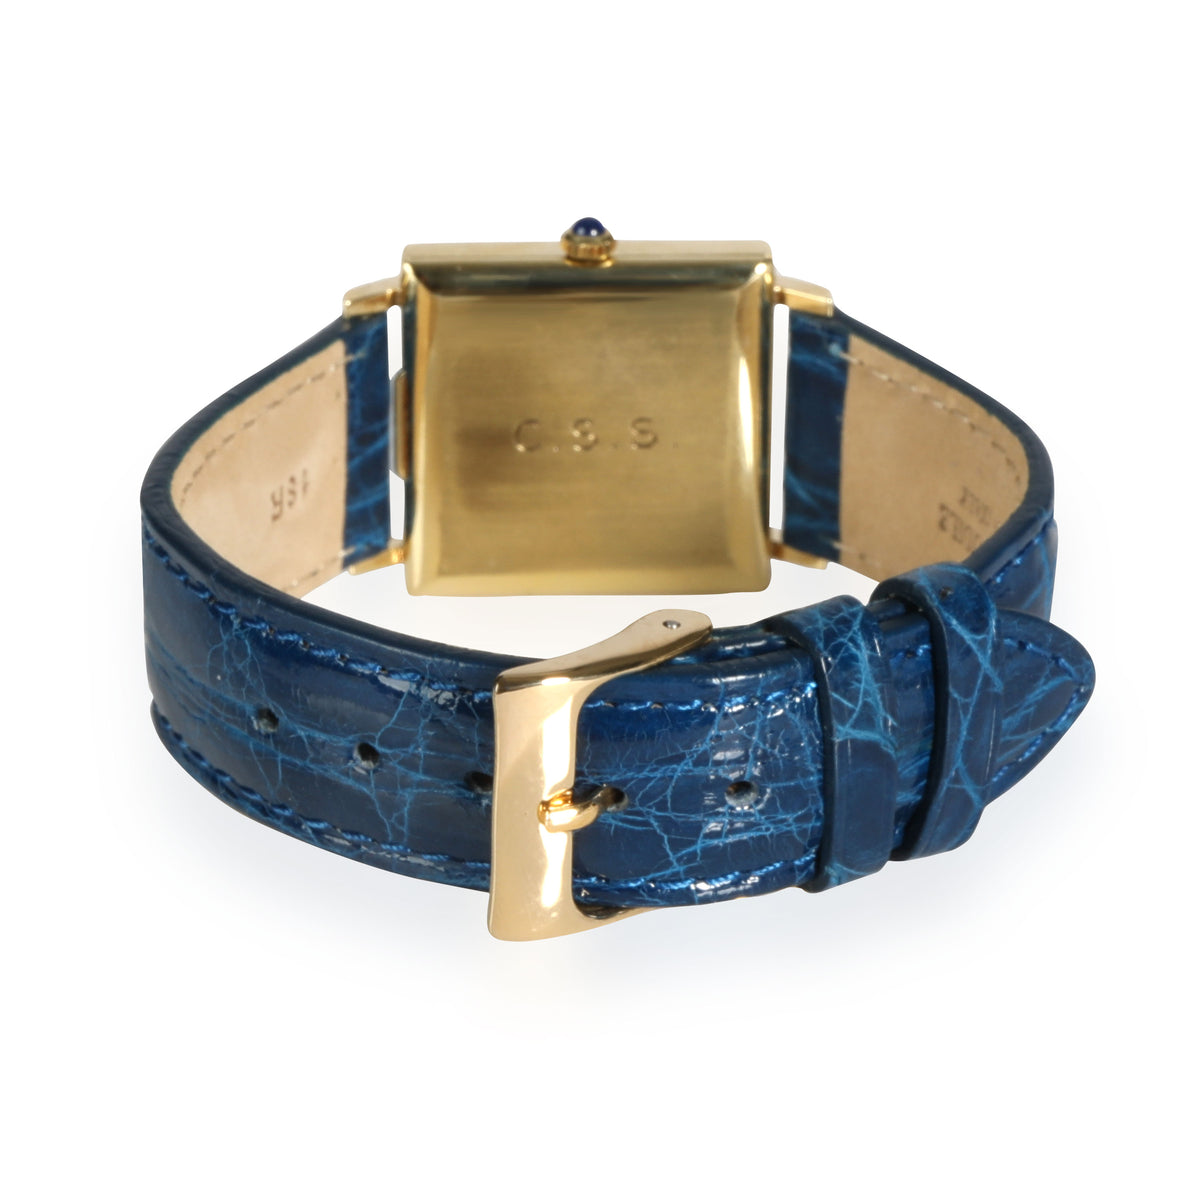 Cartier Dress 870 Women's Watch in 14kt Yellow Gold